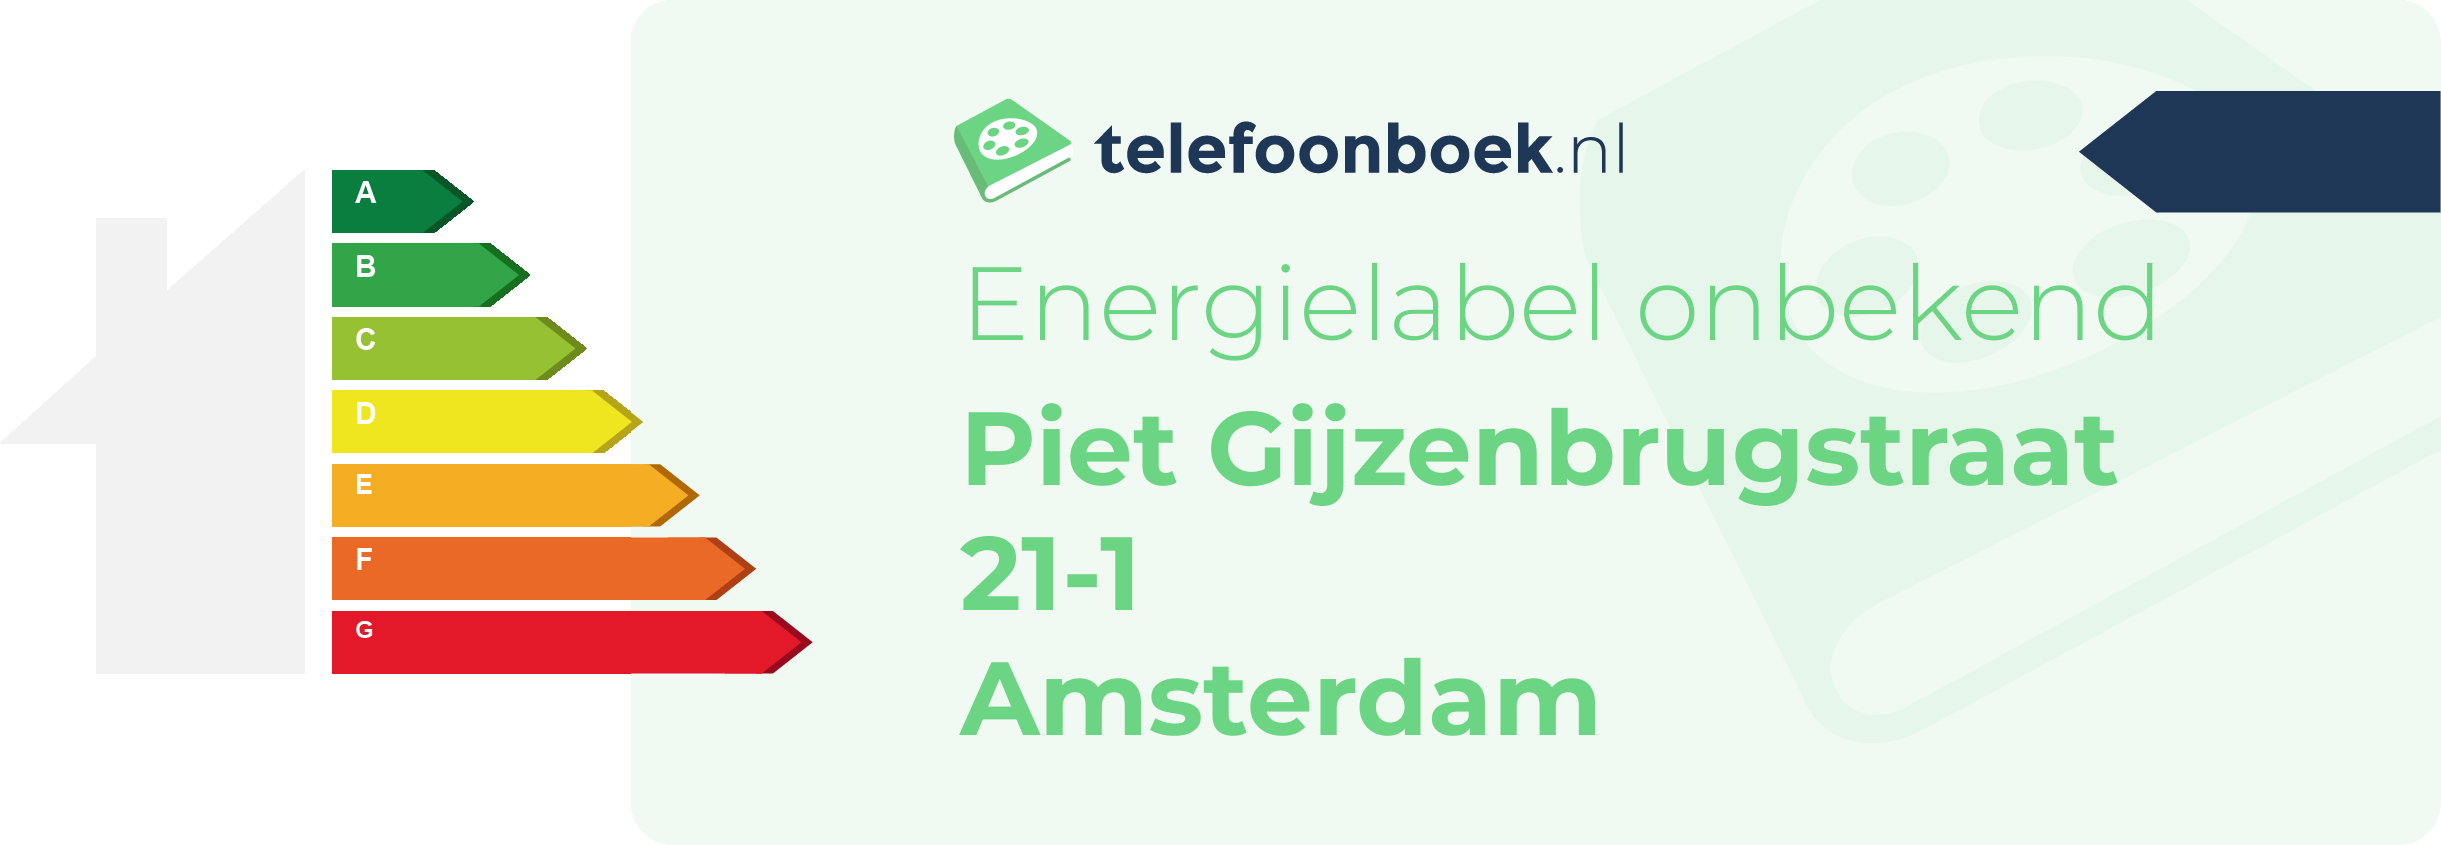 Energielabel Piet Gijzenbrugstraat 21-1 Amsterdam